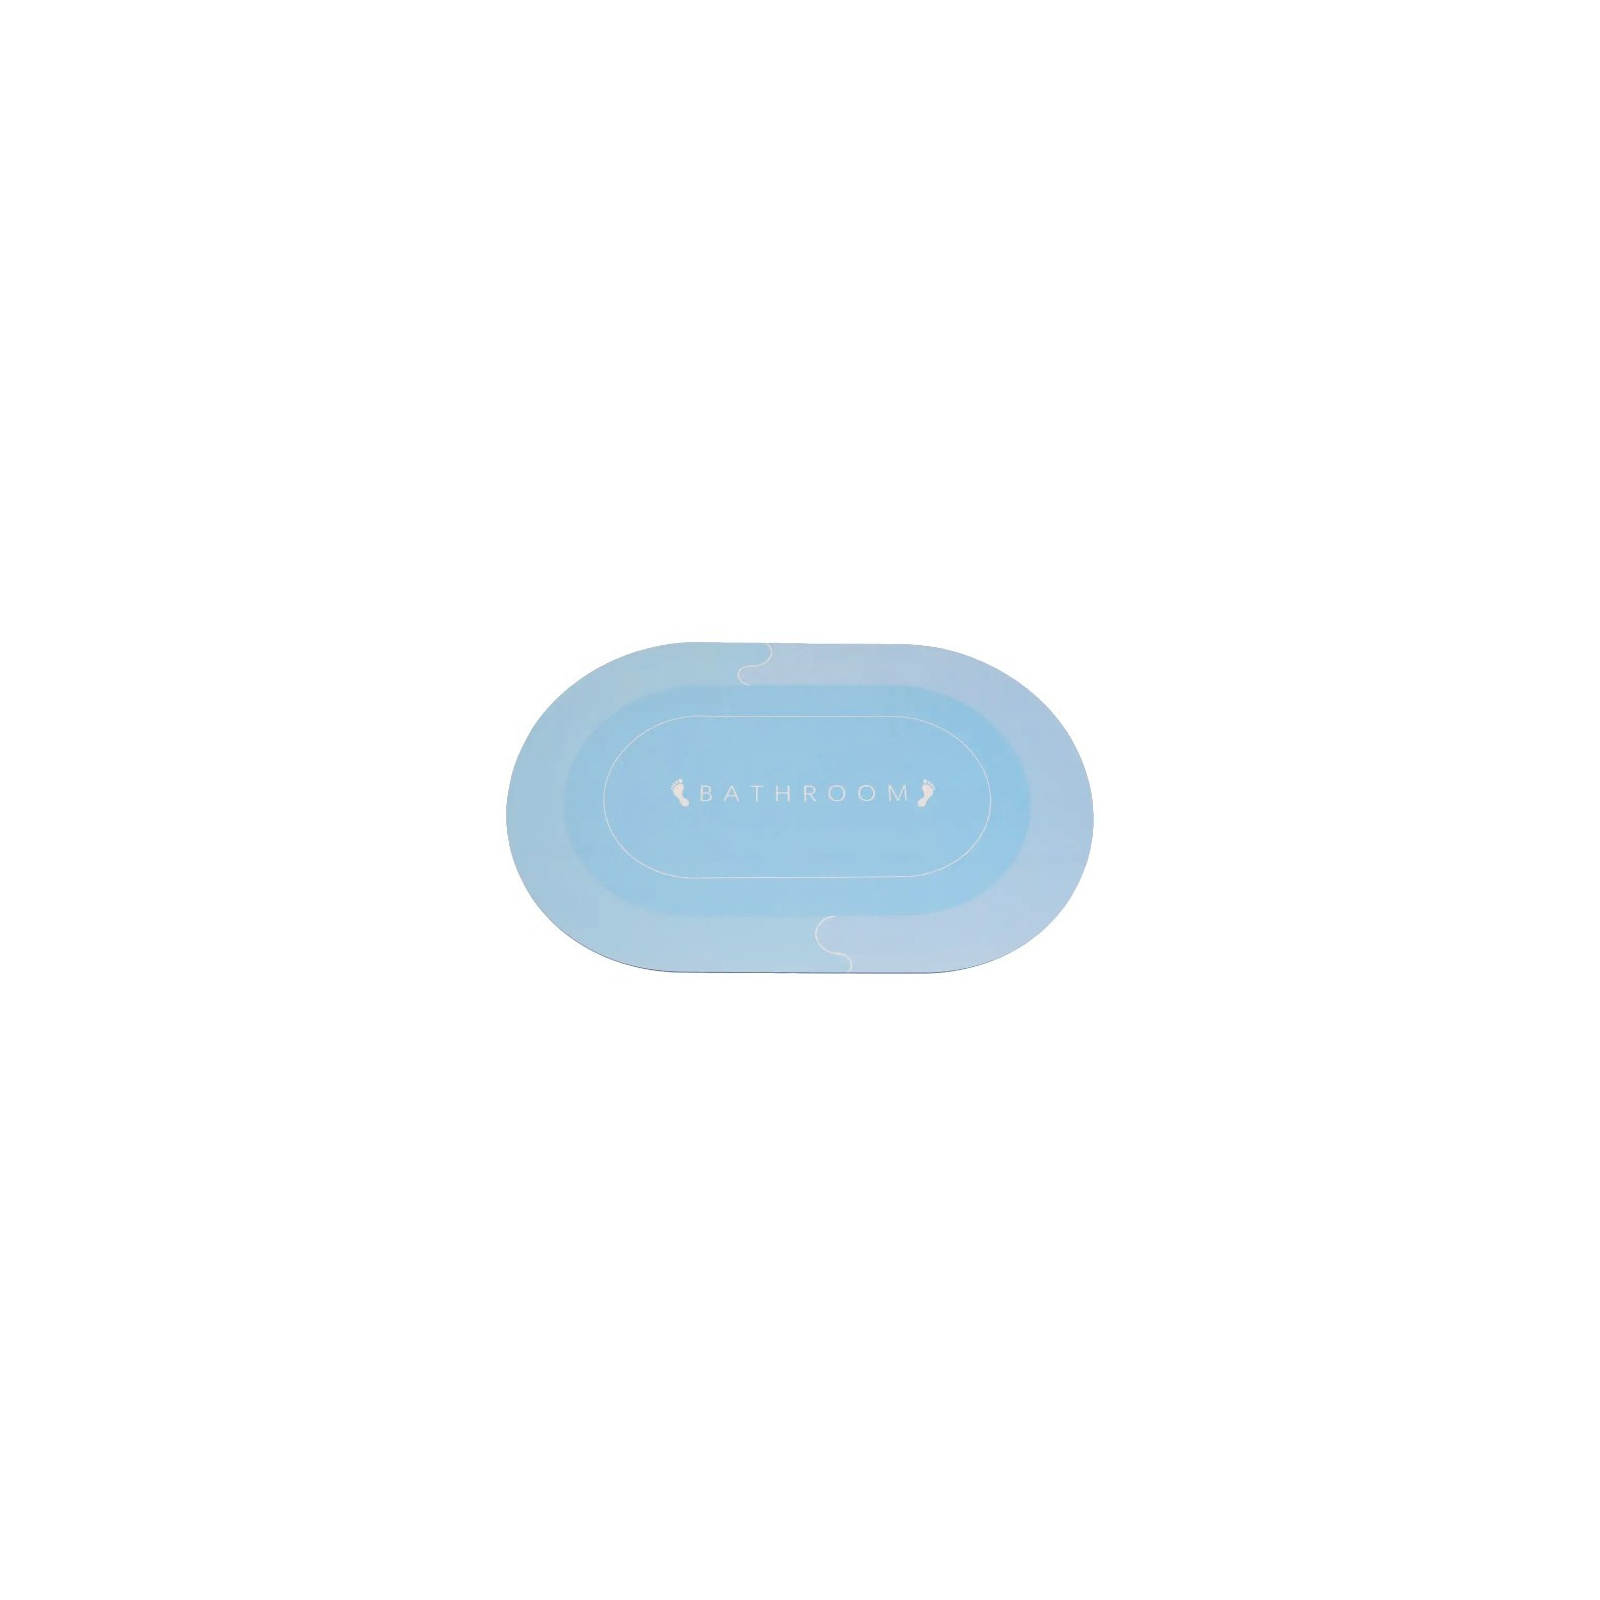 Коврик для ванной Stenson суперпоглощающий 50 х 80 см овальный серый (R30940 grey) изображение 3